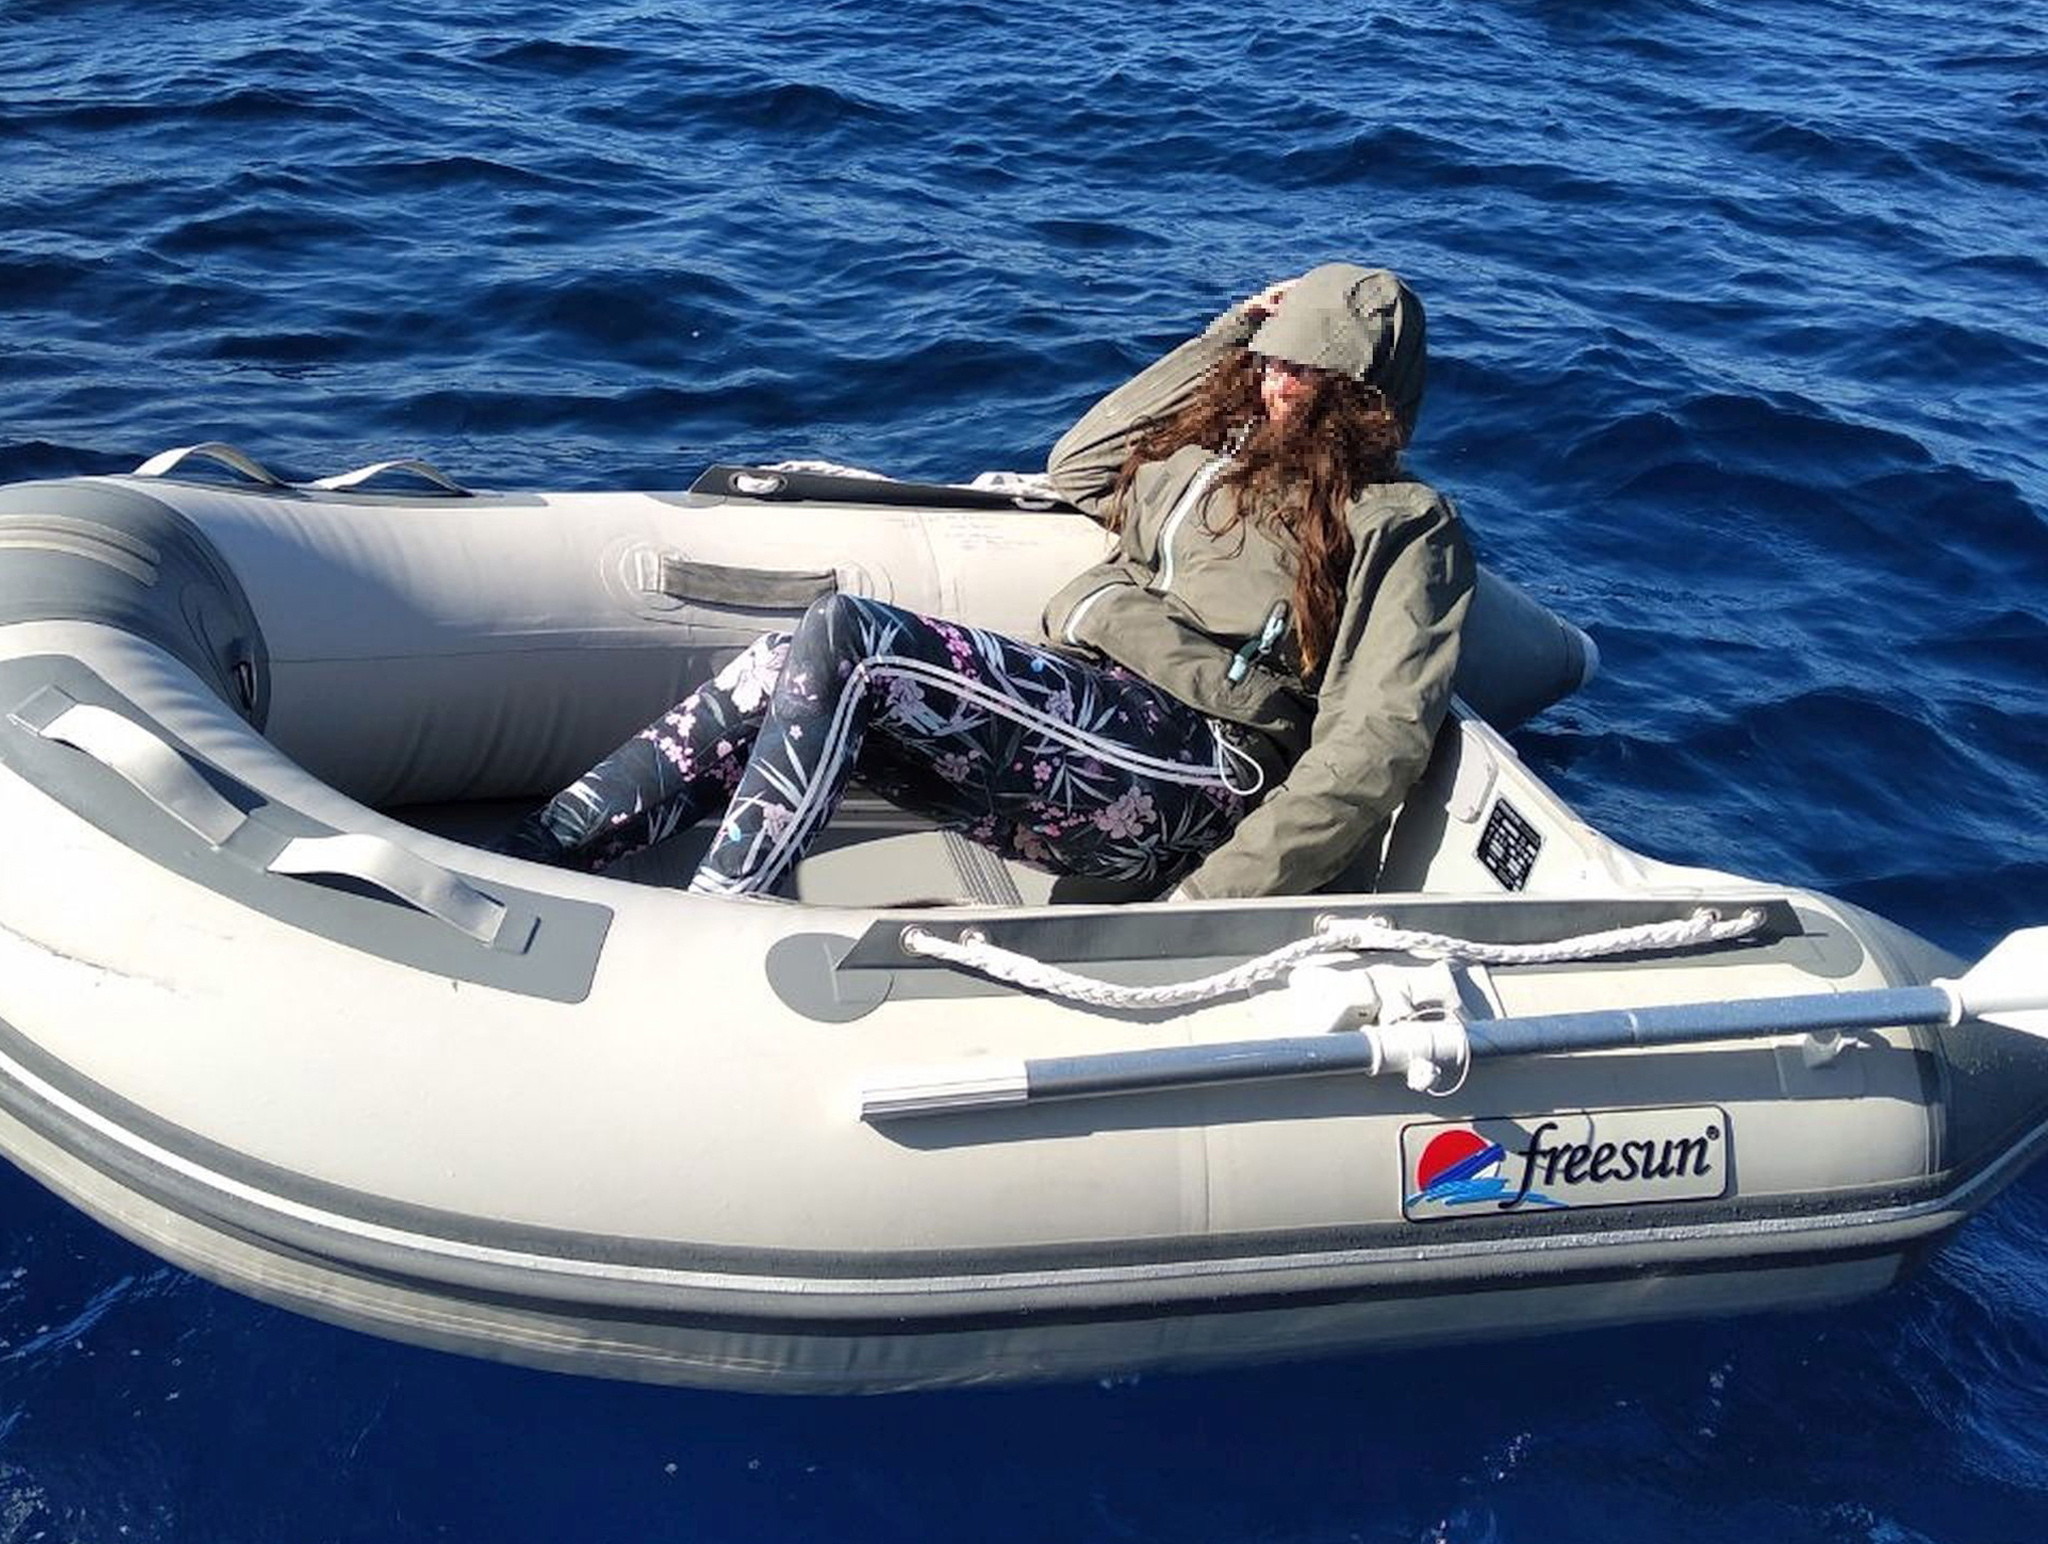 Kushila Stein - turystka z Nowej Zelandii, uratowana dwa dni po zaginięciu przez Grecką straż przybrzeżną. Kobieta odnalazła się ponad 100 kilometrów od brzegu Krety, na której wypoczywała. fot. EPA/HELLENIC COAST GUARD